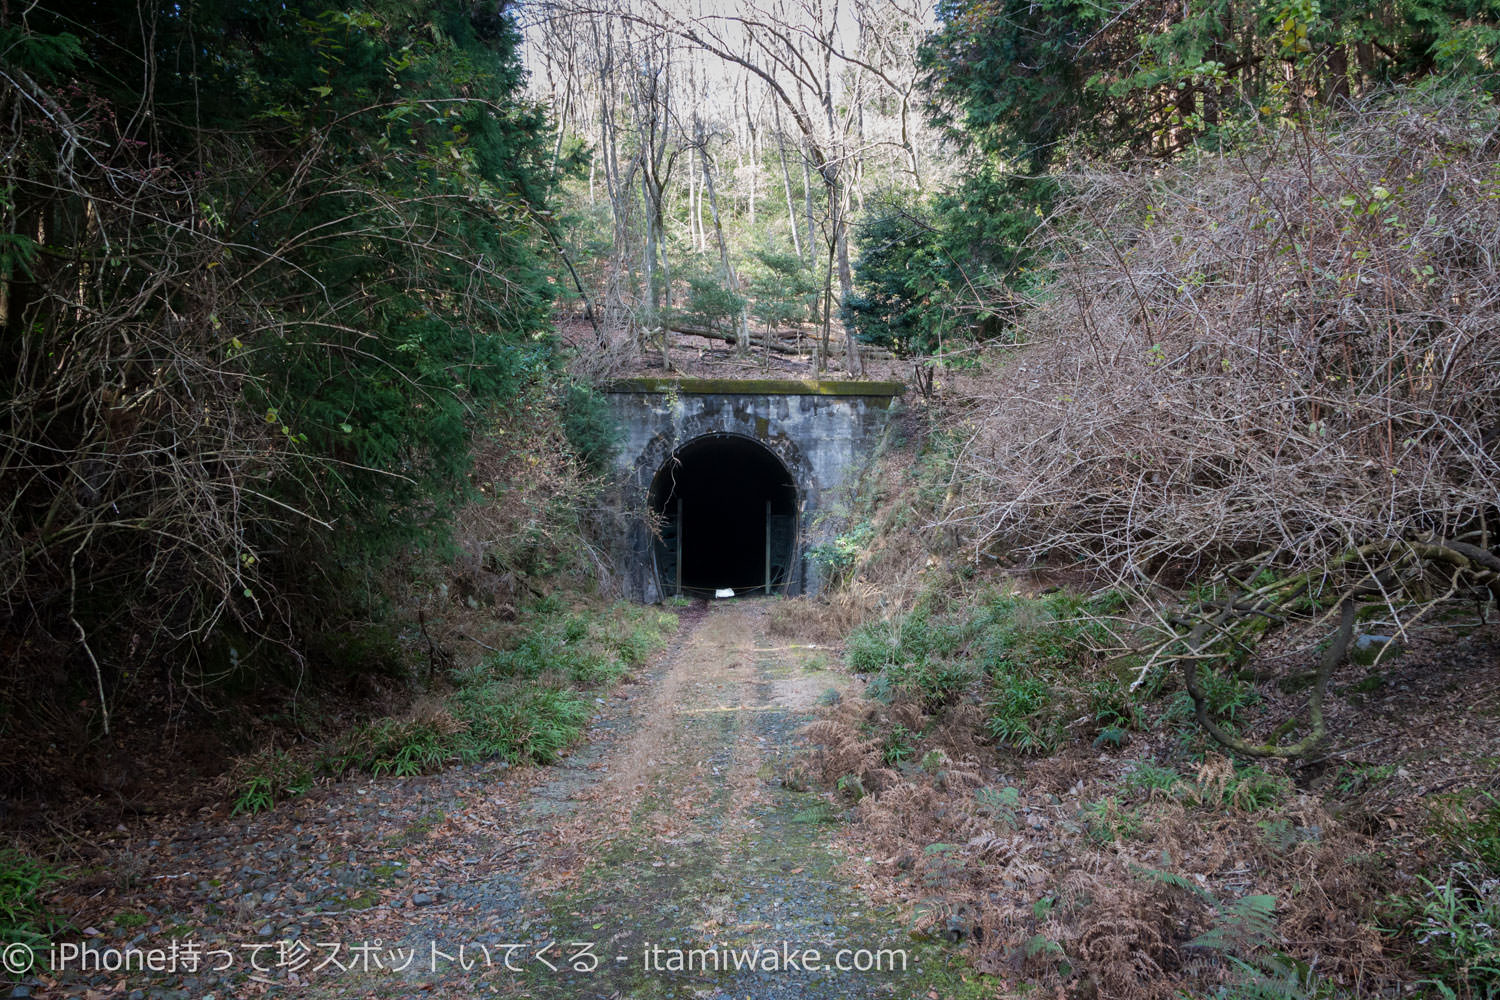 廃トンネル